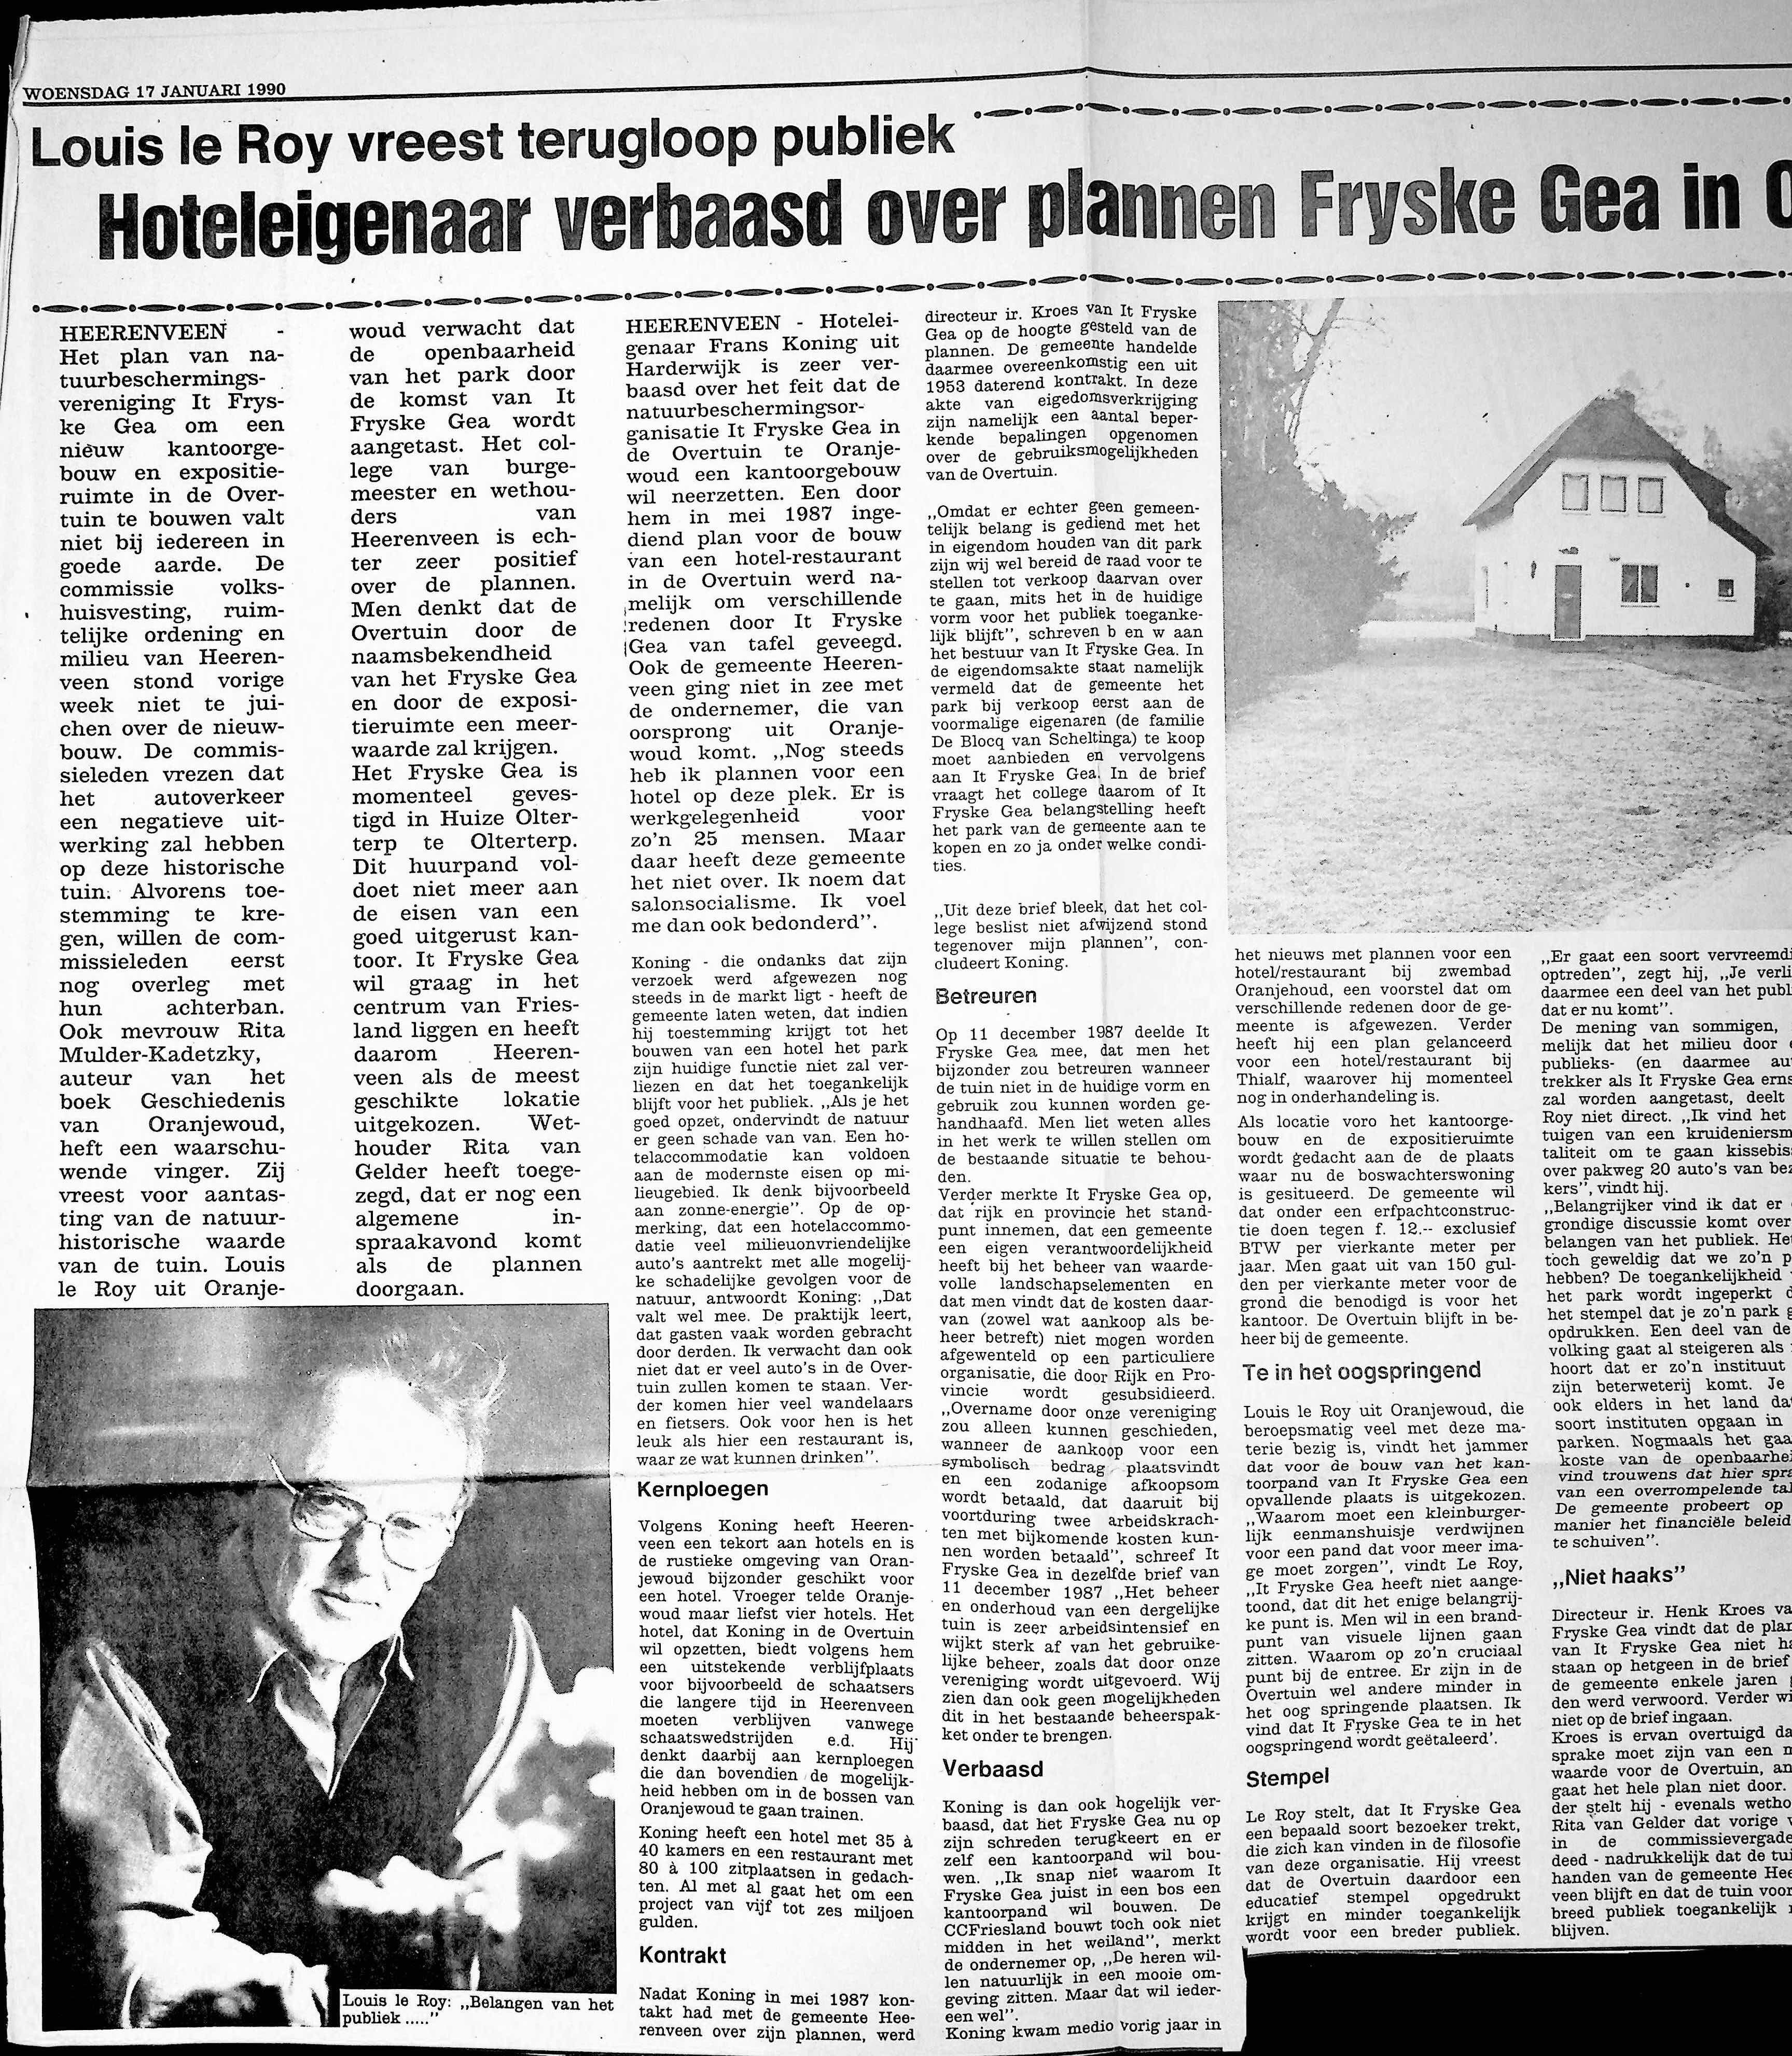 19900117_Hoteleigenaar_verbaasd_over_plannen_Fryske_Gea_in_Ovretuin_002.jpg